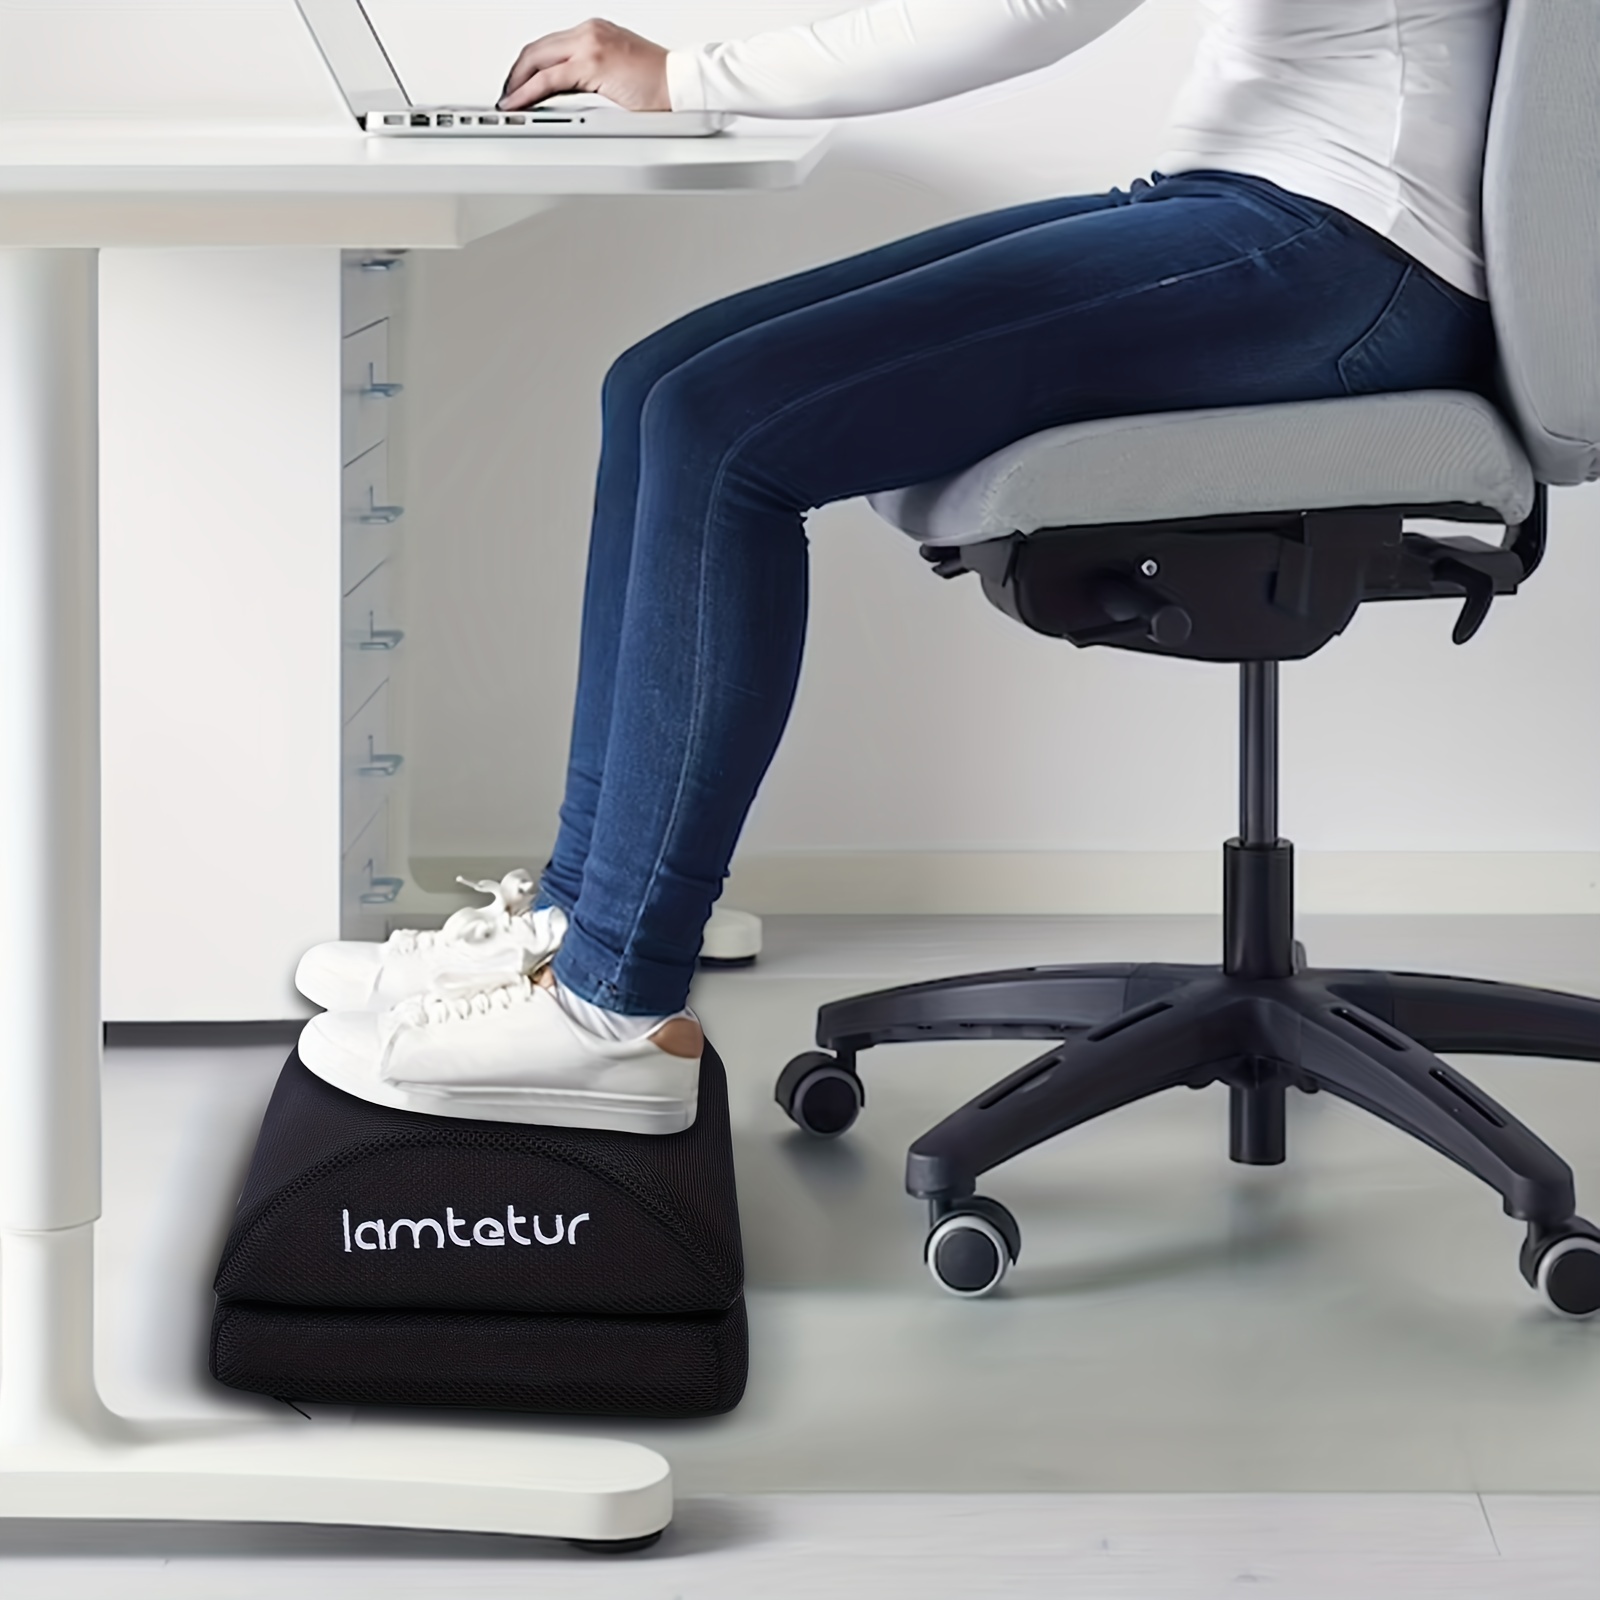  Foot Rest for Under Desk at Work, Adjustable Memory